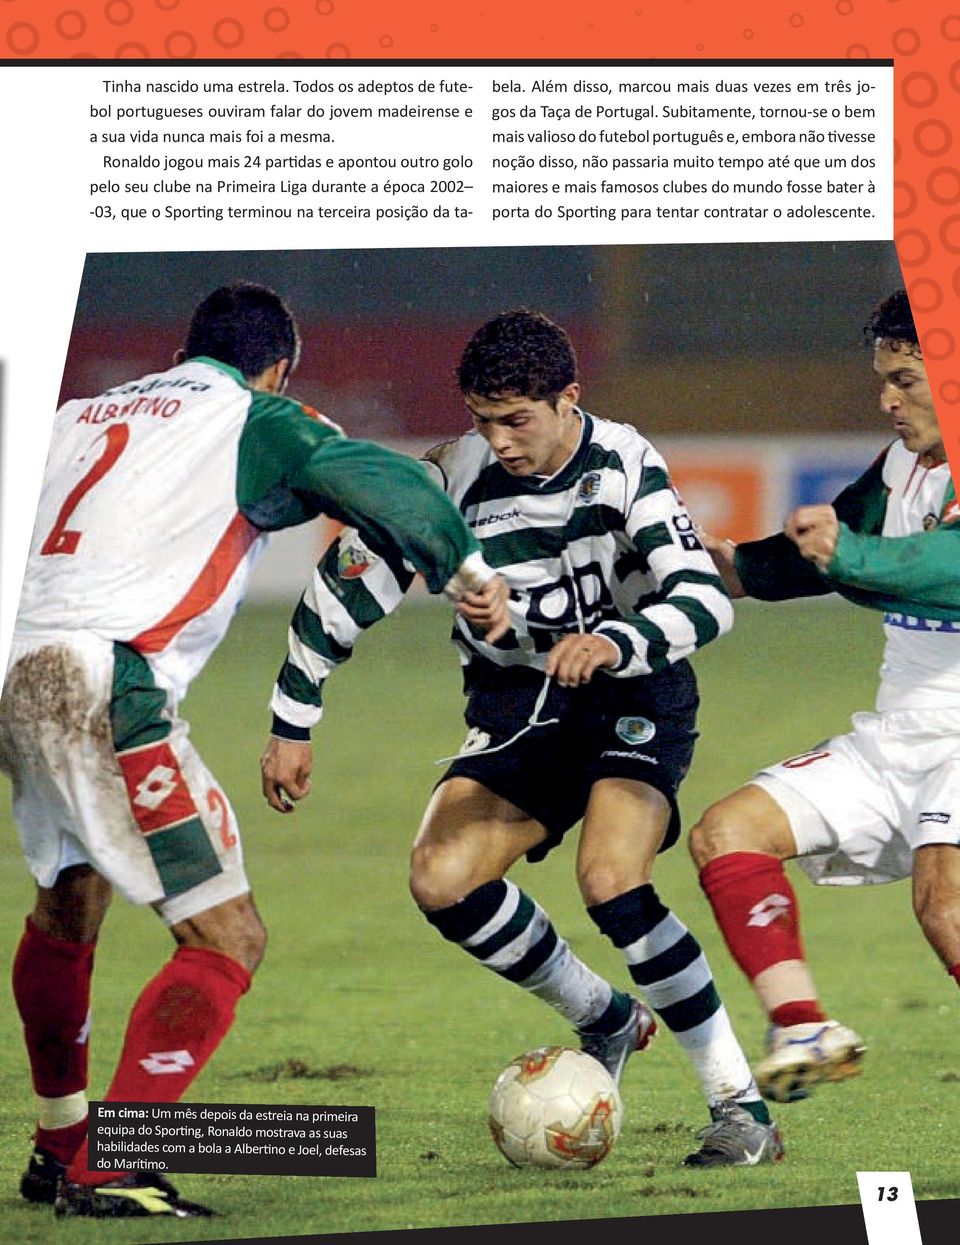 Além disso, marcou mais duas vezes em três jogos da Taça de Portugal.